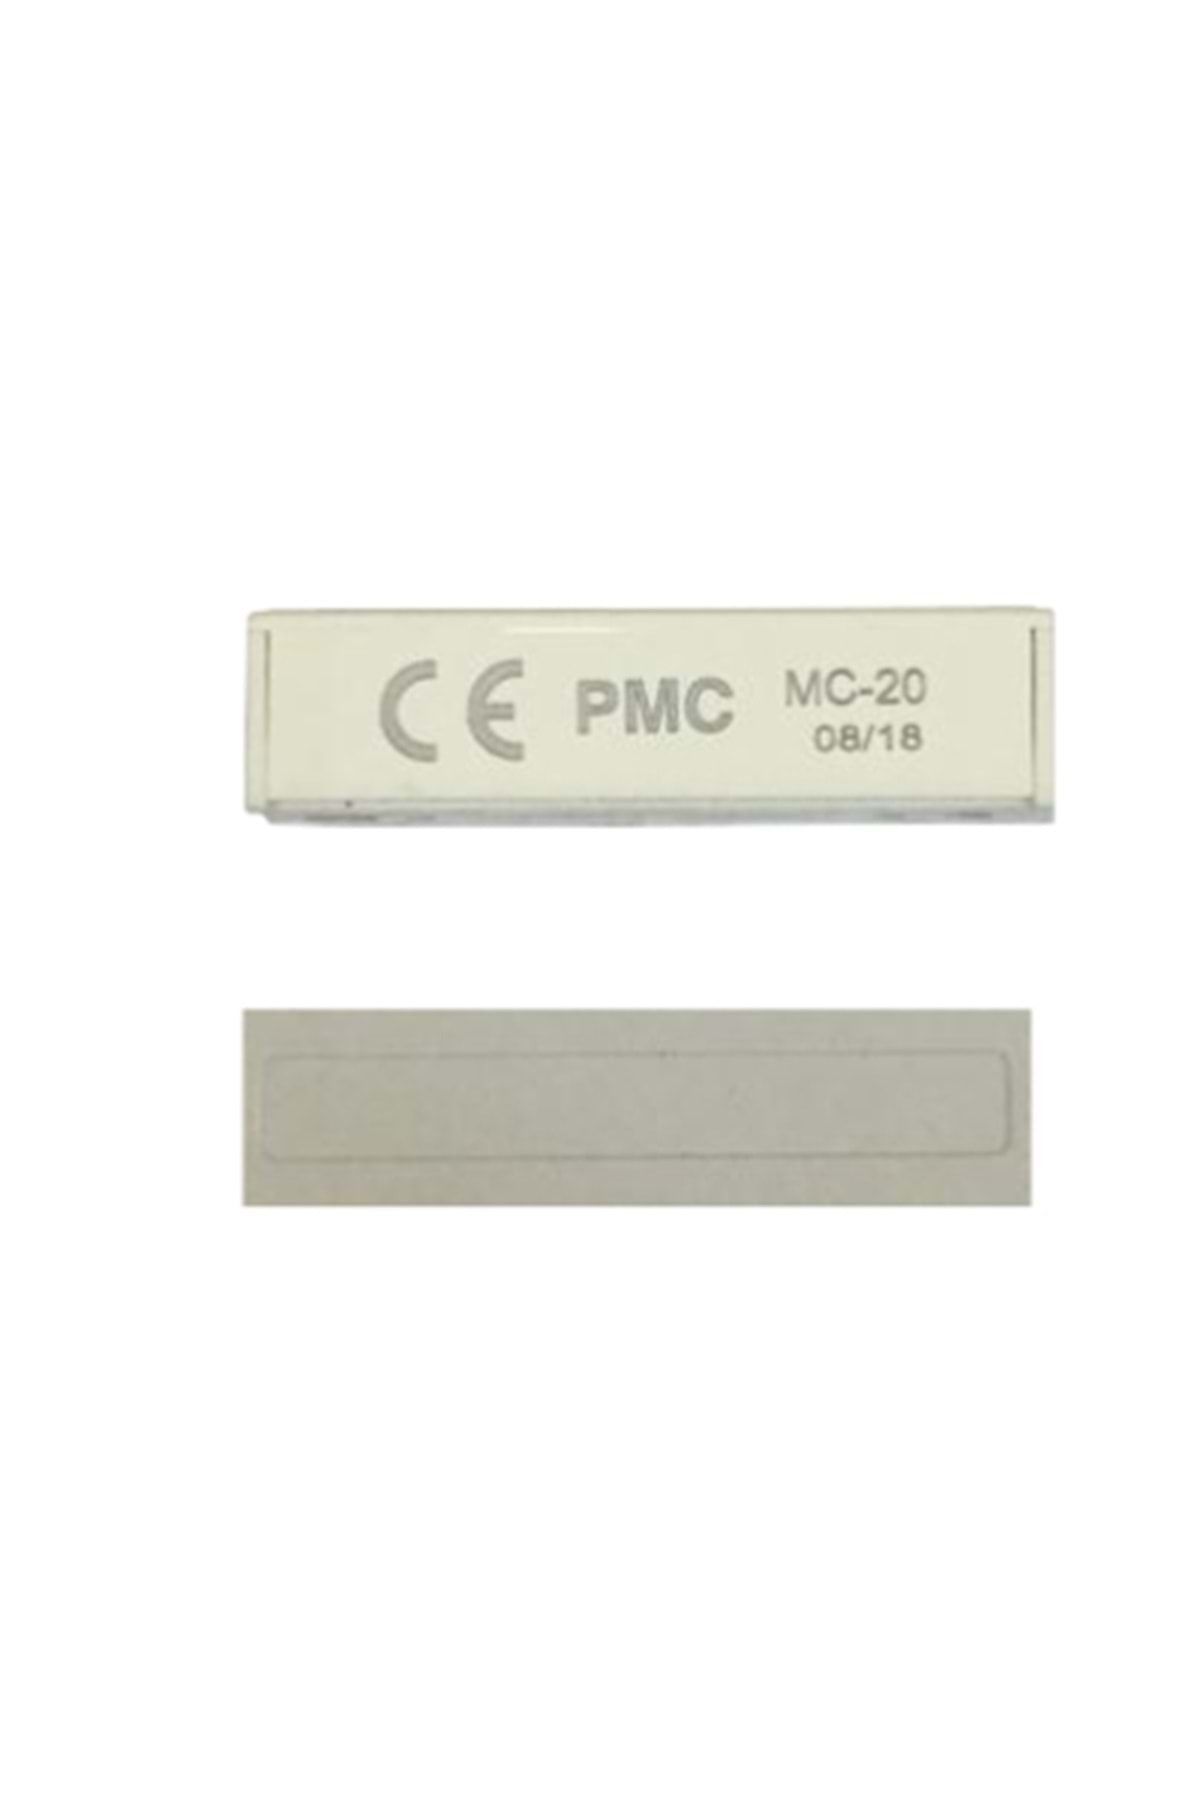 PARADOX Pmc Standart Tip Manyetik Kontak Beyaz Renk